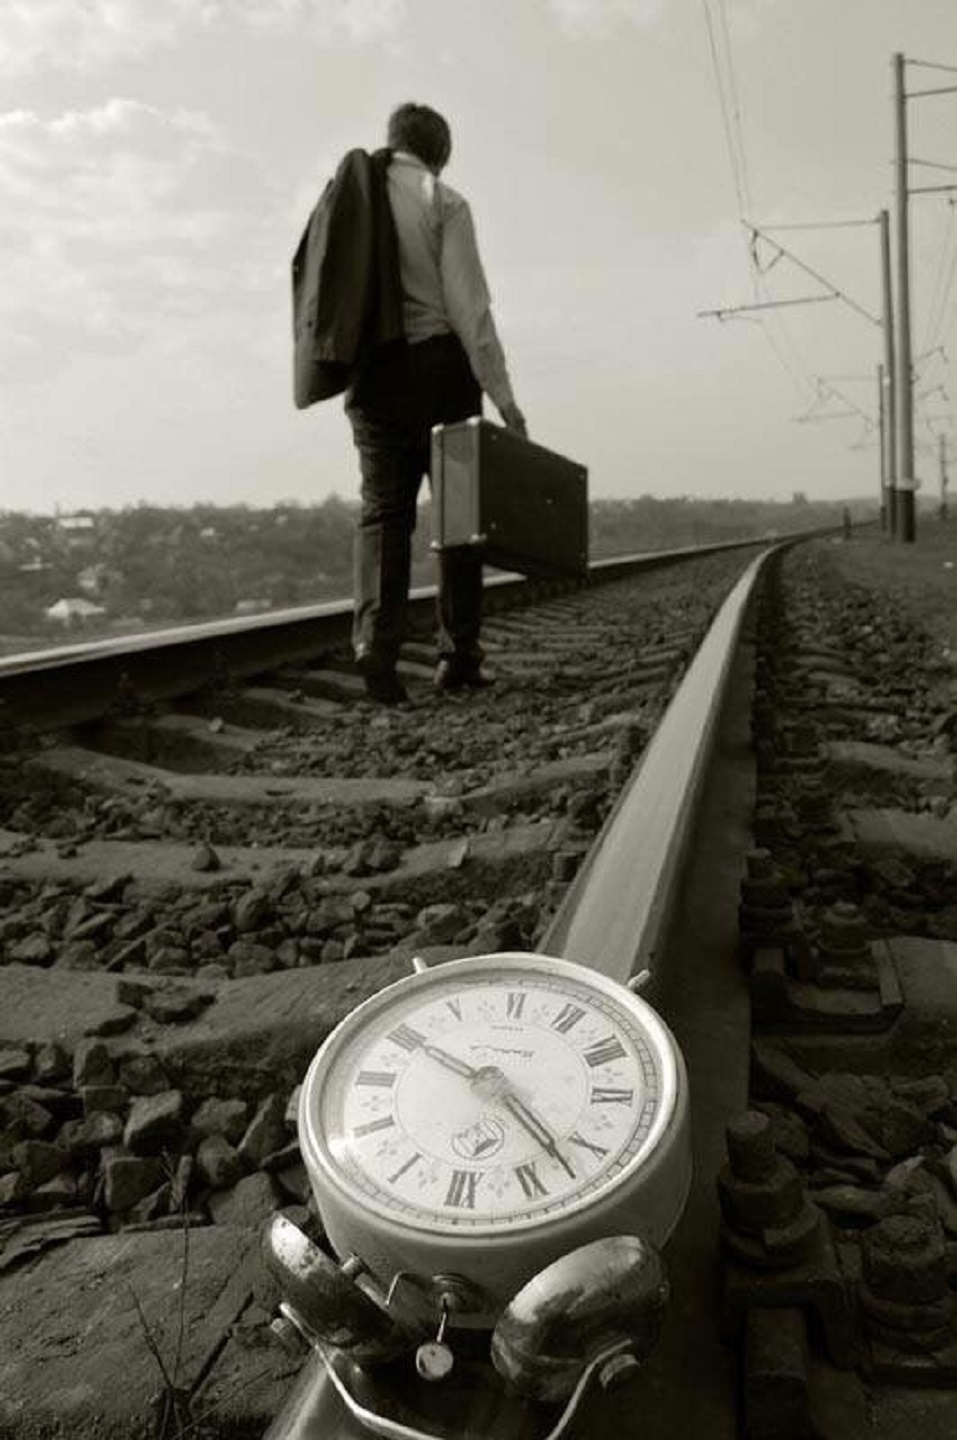 30 времени уходит. Уходящий поезд. Поезд ушел. Опоздал на поезд. Жизнь уходит.